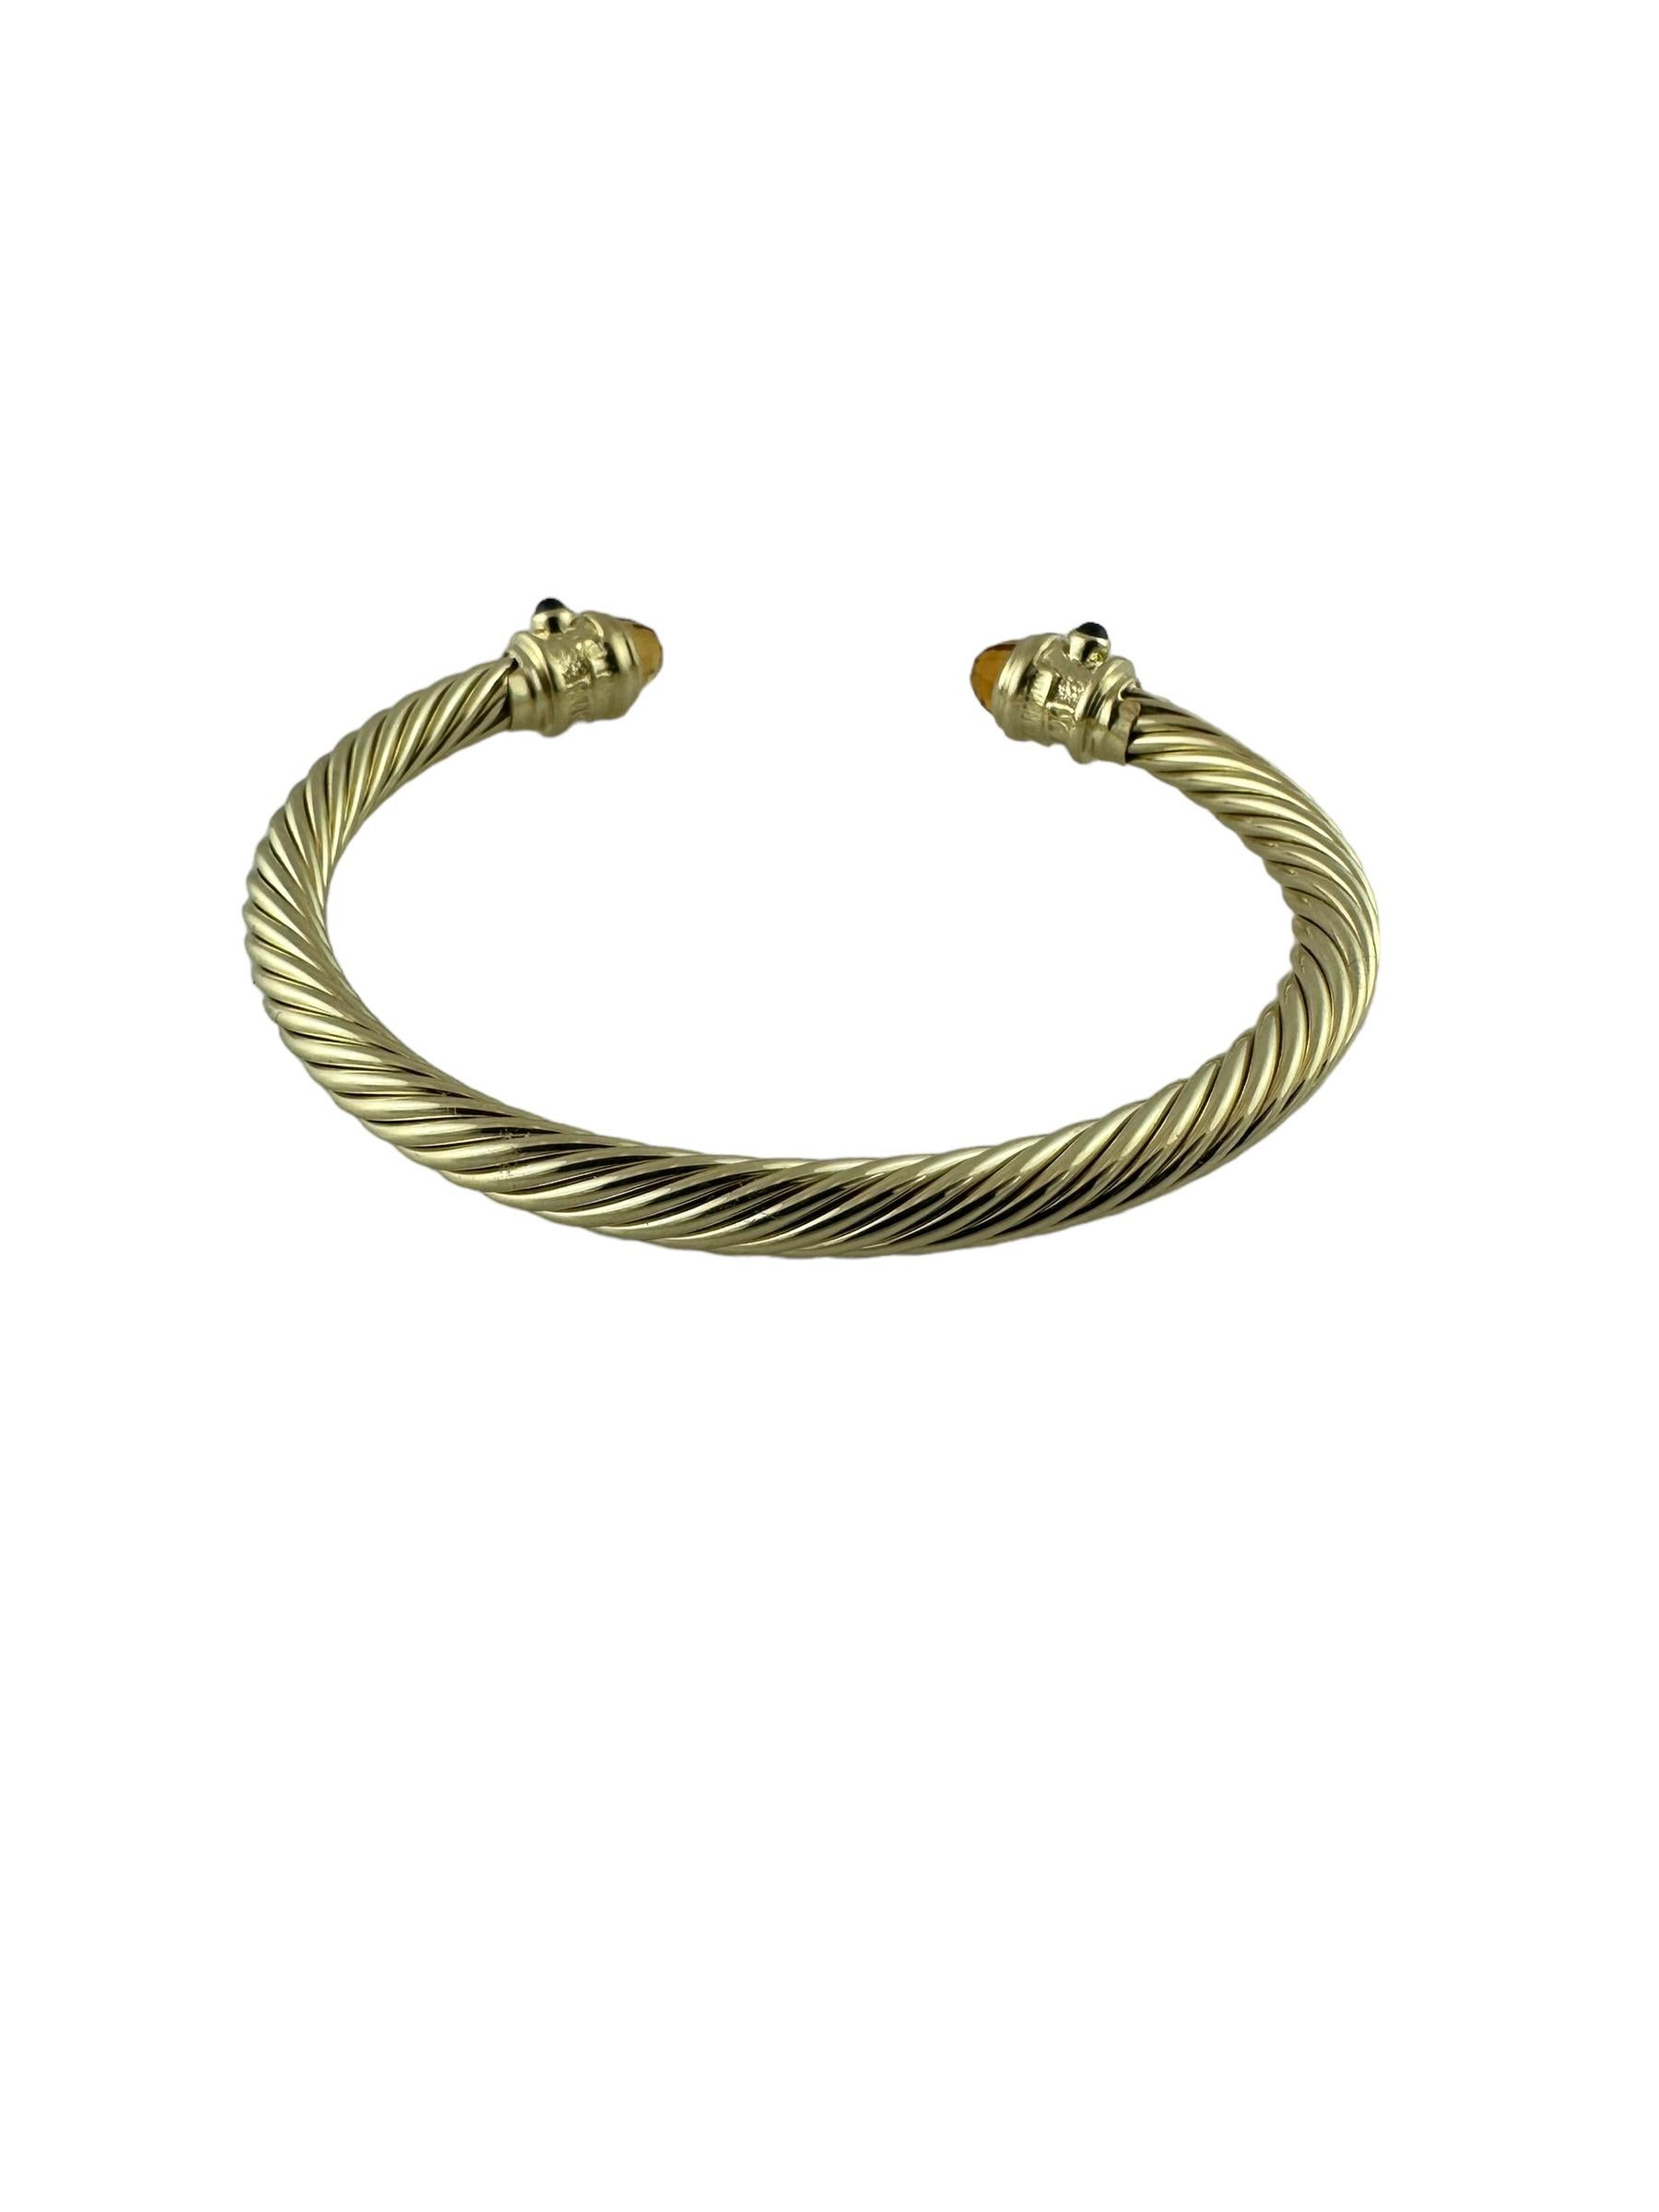 Briolette Cut David Yurman Renaissance 14K Yellow Gold Citrine Sapphire Cable Cuff Bracelet For Sale